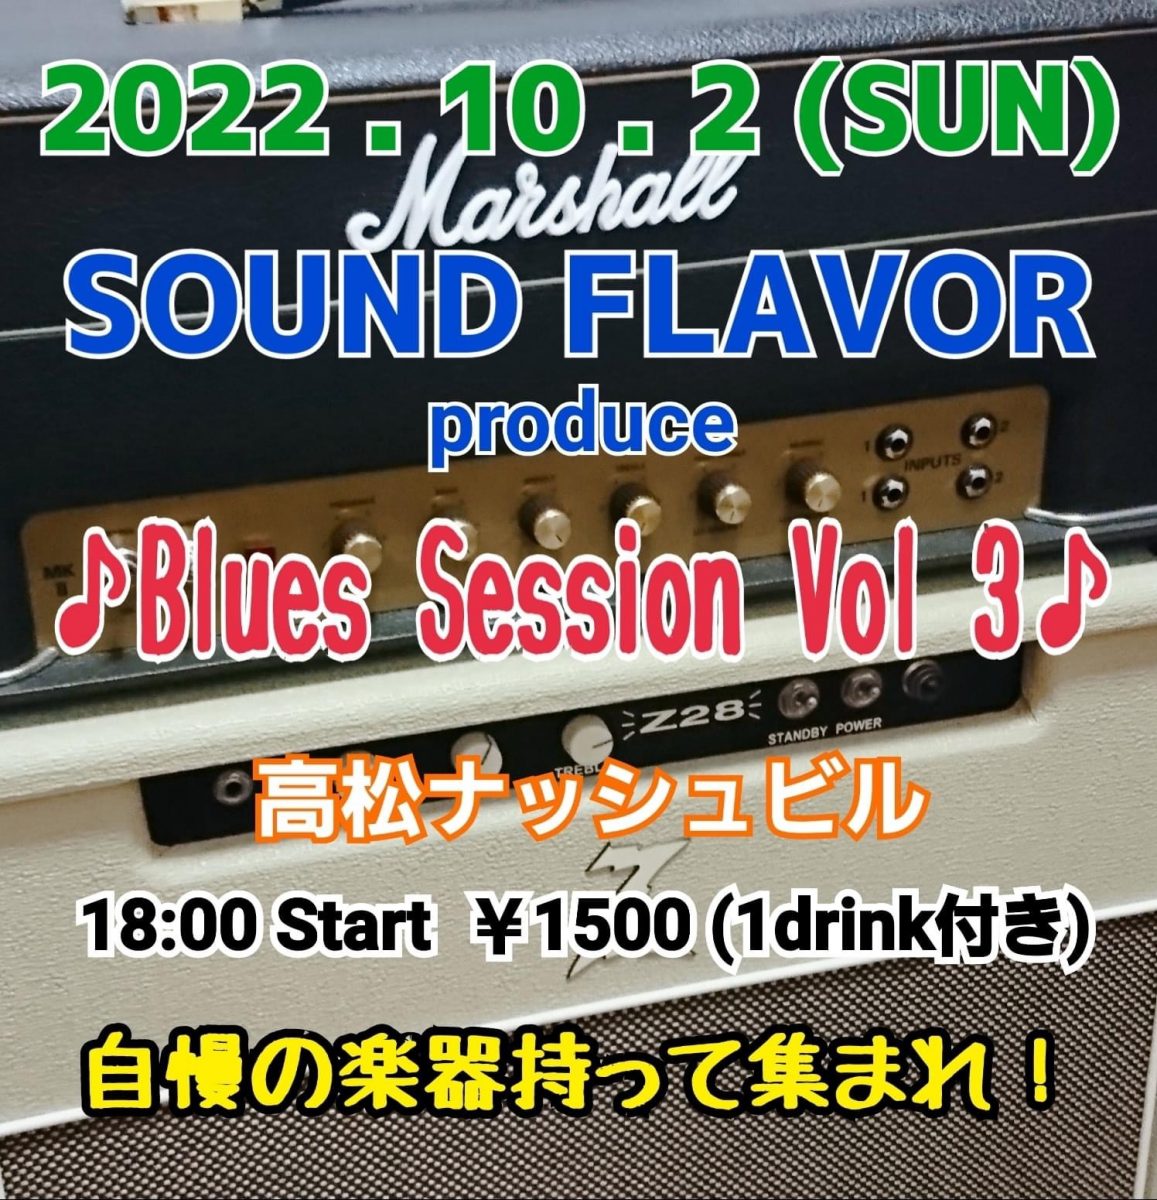 SOUND FLAVOR produce「Blues Session Vol-3」